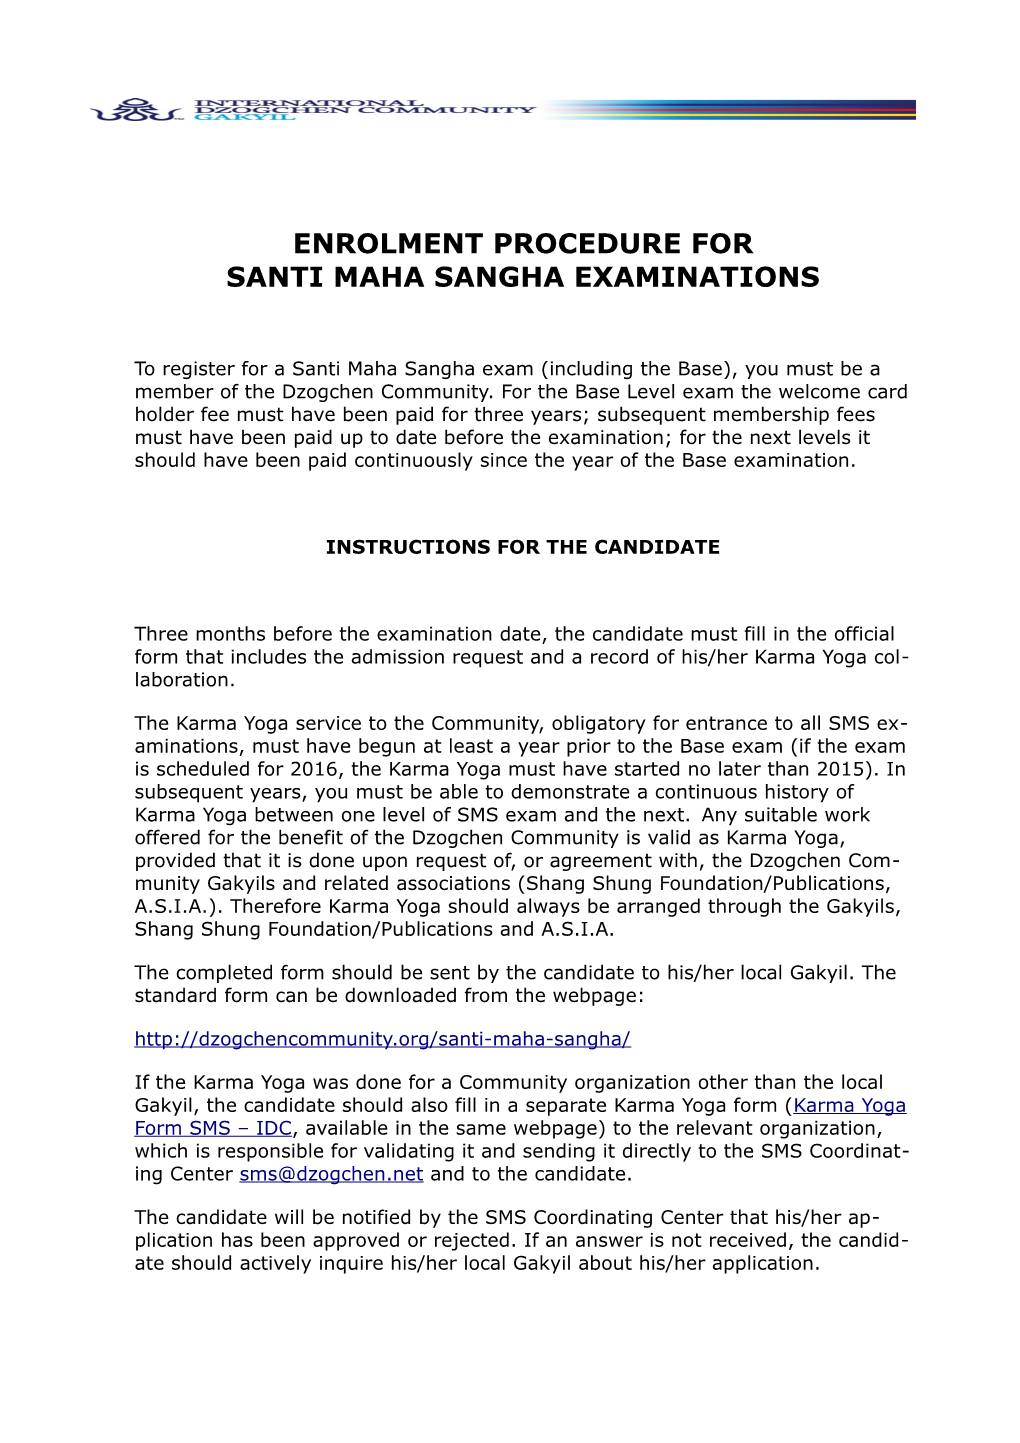 Enrolment Procedure for Santi Maha Sangha Examinations